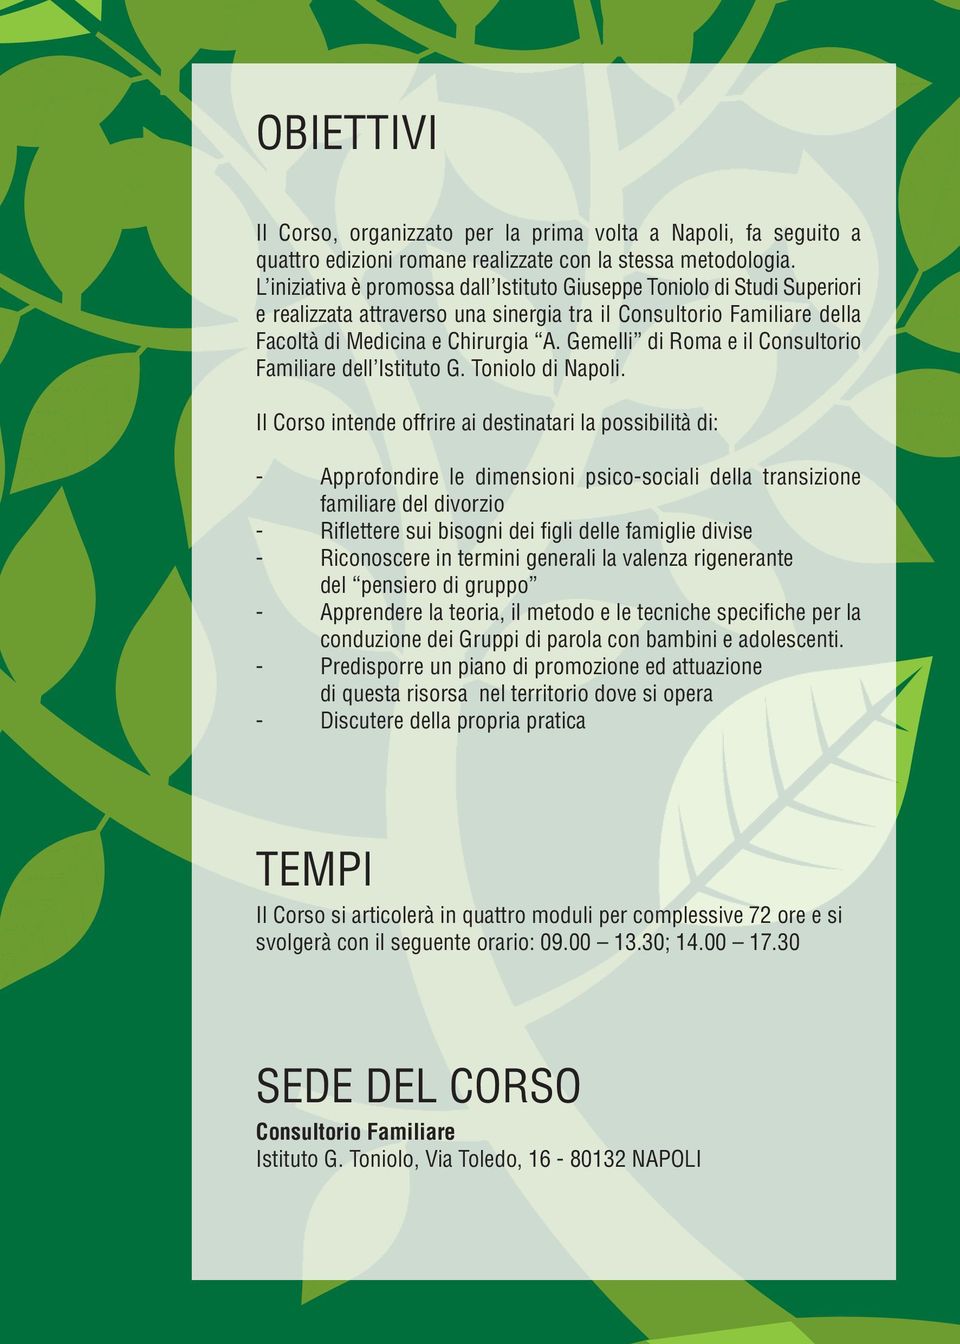 Gemelli di Roma e il Consultorio Familiare dell Istituto G. Toniolo di Napoli.